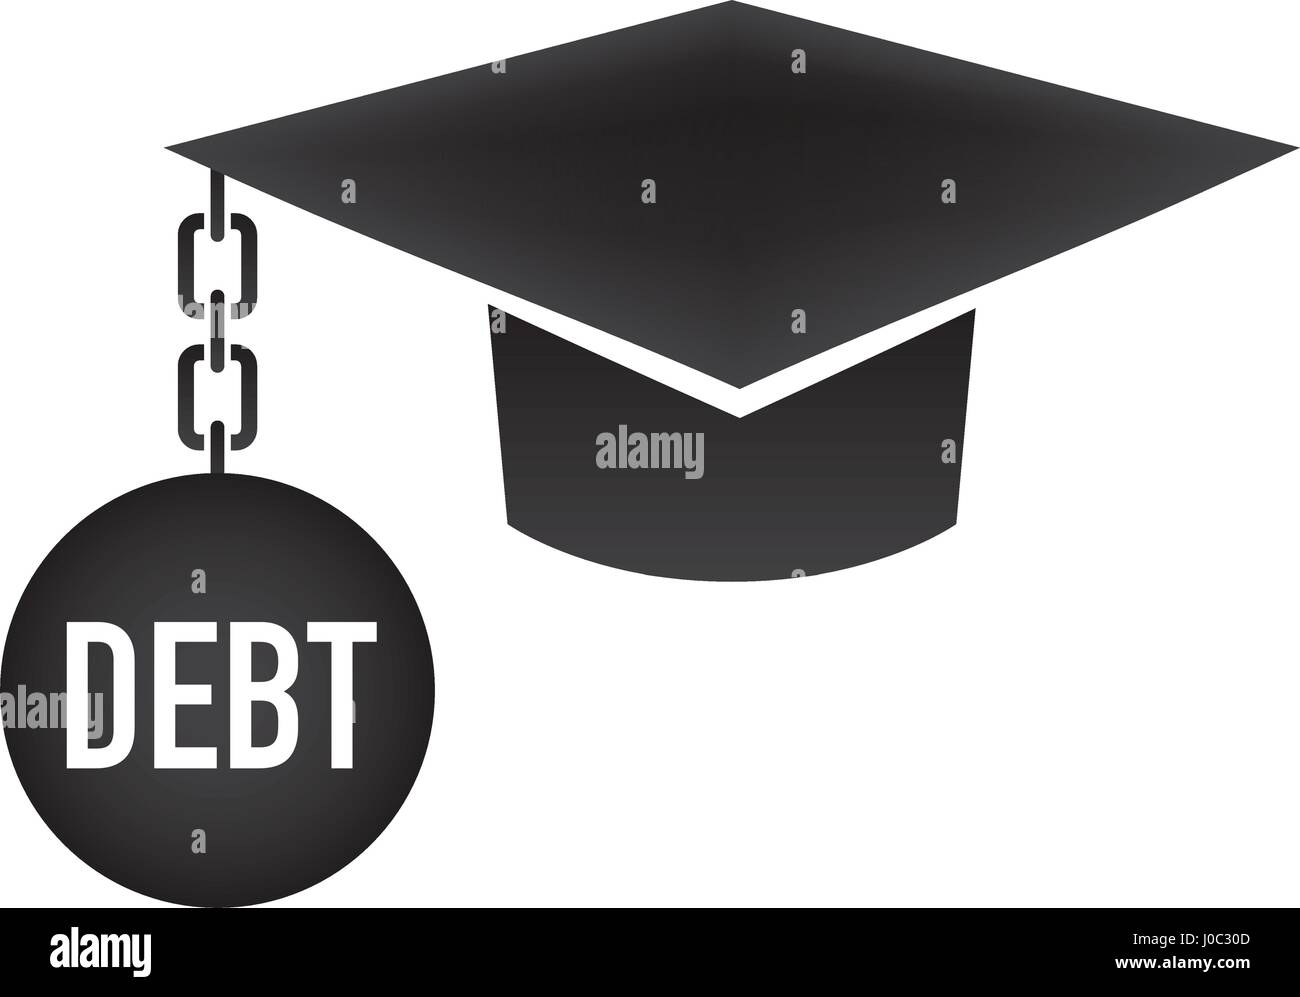 Graduate Student Loan - Iconos gráficos de préstamos estudiantiles para la Educación ayuda financiera o asistencia, préstamos del gobierno, y la deuda Ilustración del Vector